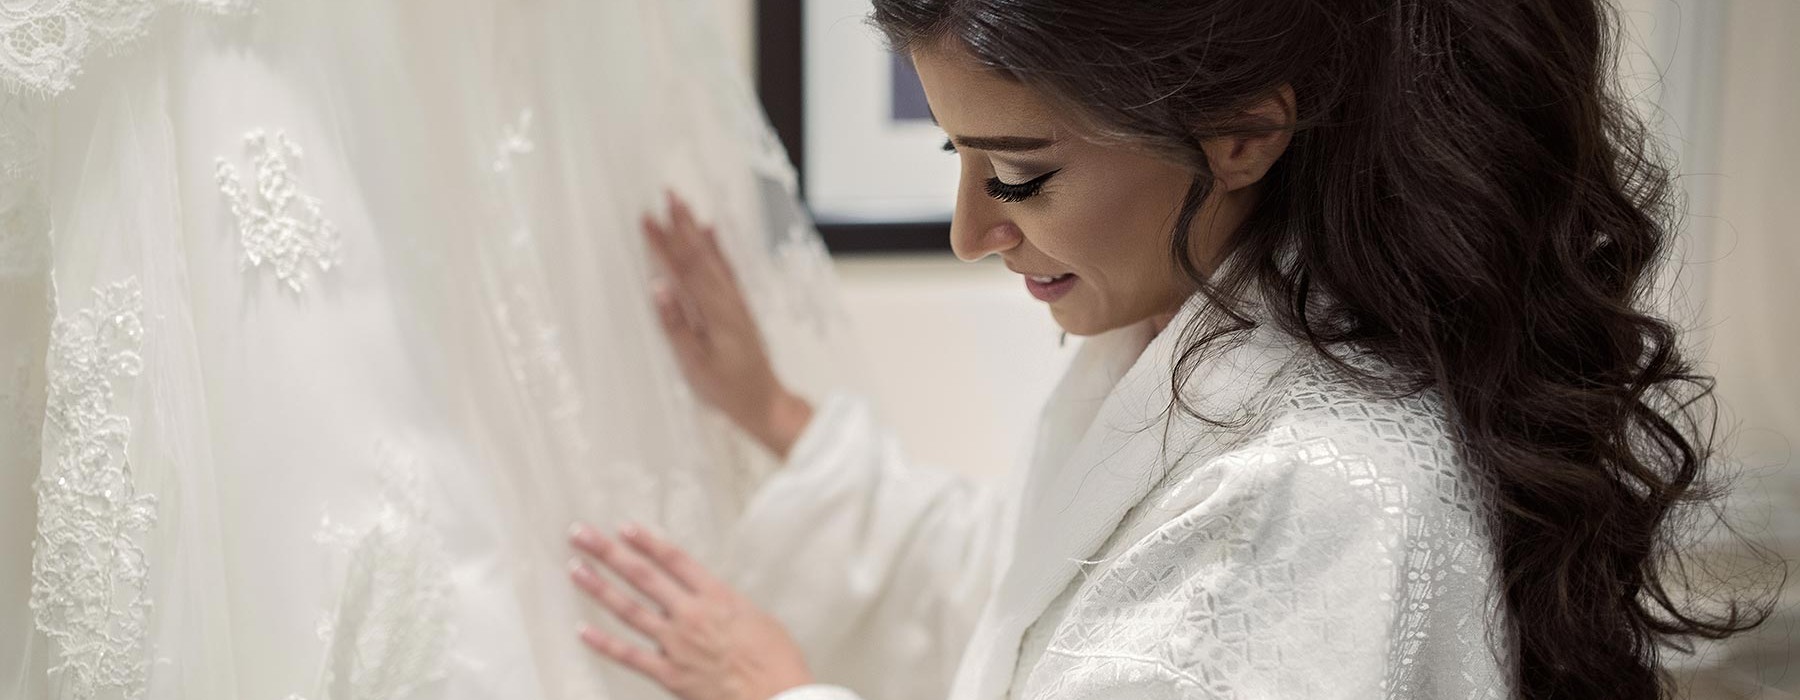 Arab wedding photo sessions Dubai